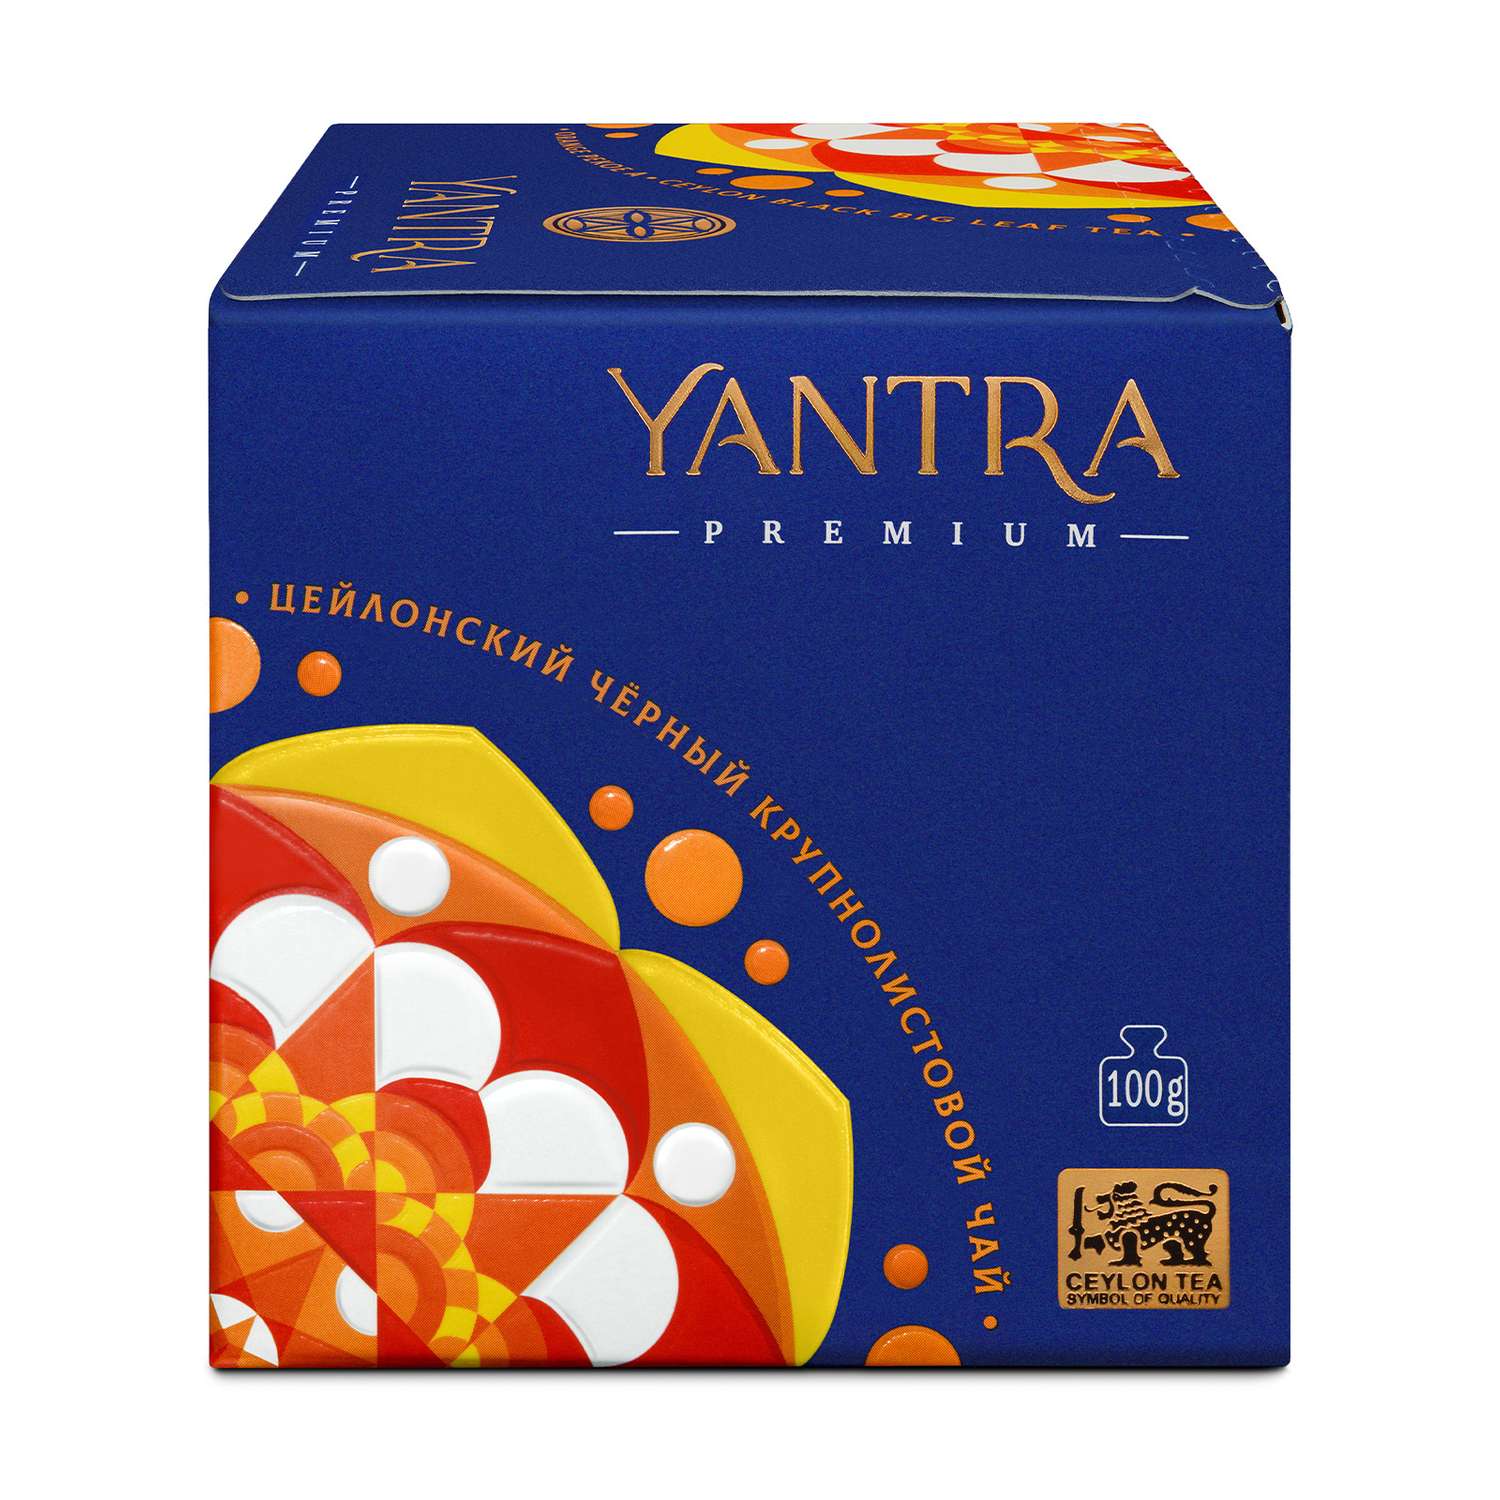 Чай Премиум Yantra чёрный крупнолистовой стандарт OPA 100 г - фото 6